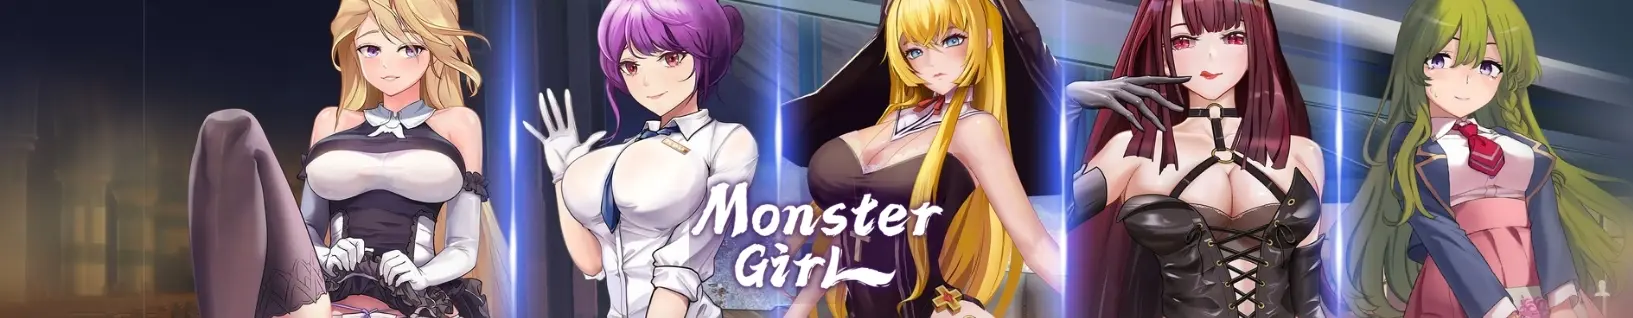 Monster Girl main image